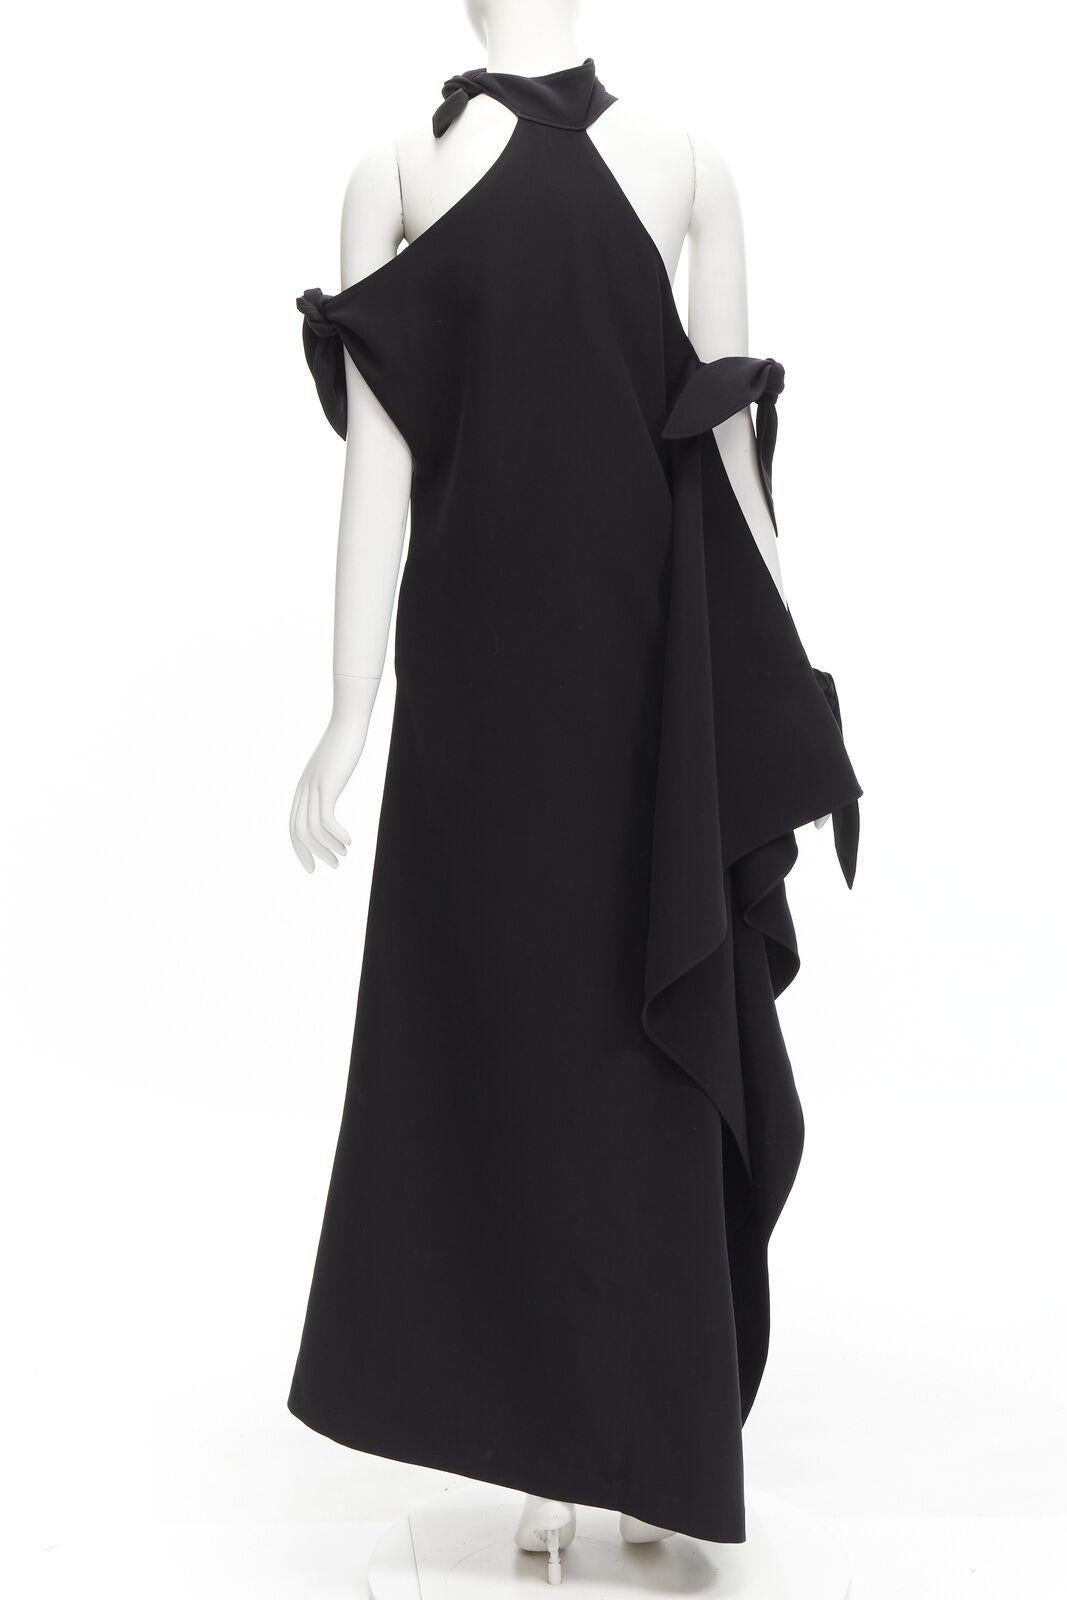 Women's ROSIE ASSOULIN 2015 Runway black cold shoulder high slit halter gown dress US2 S For Sale